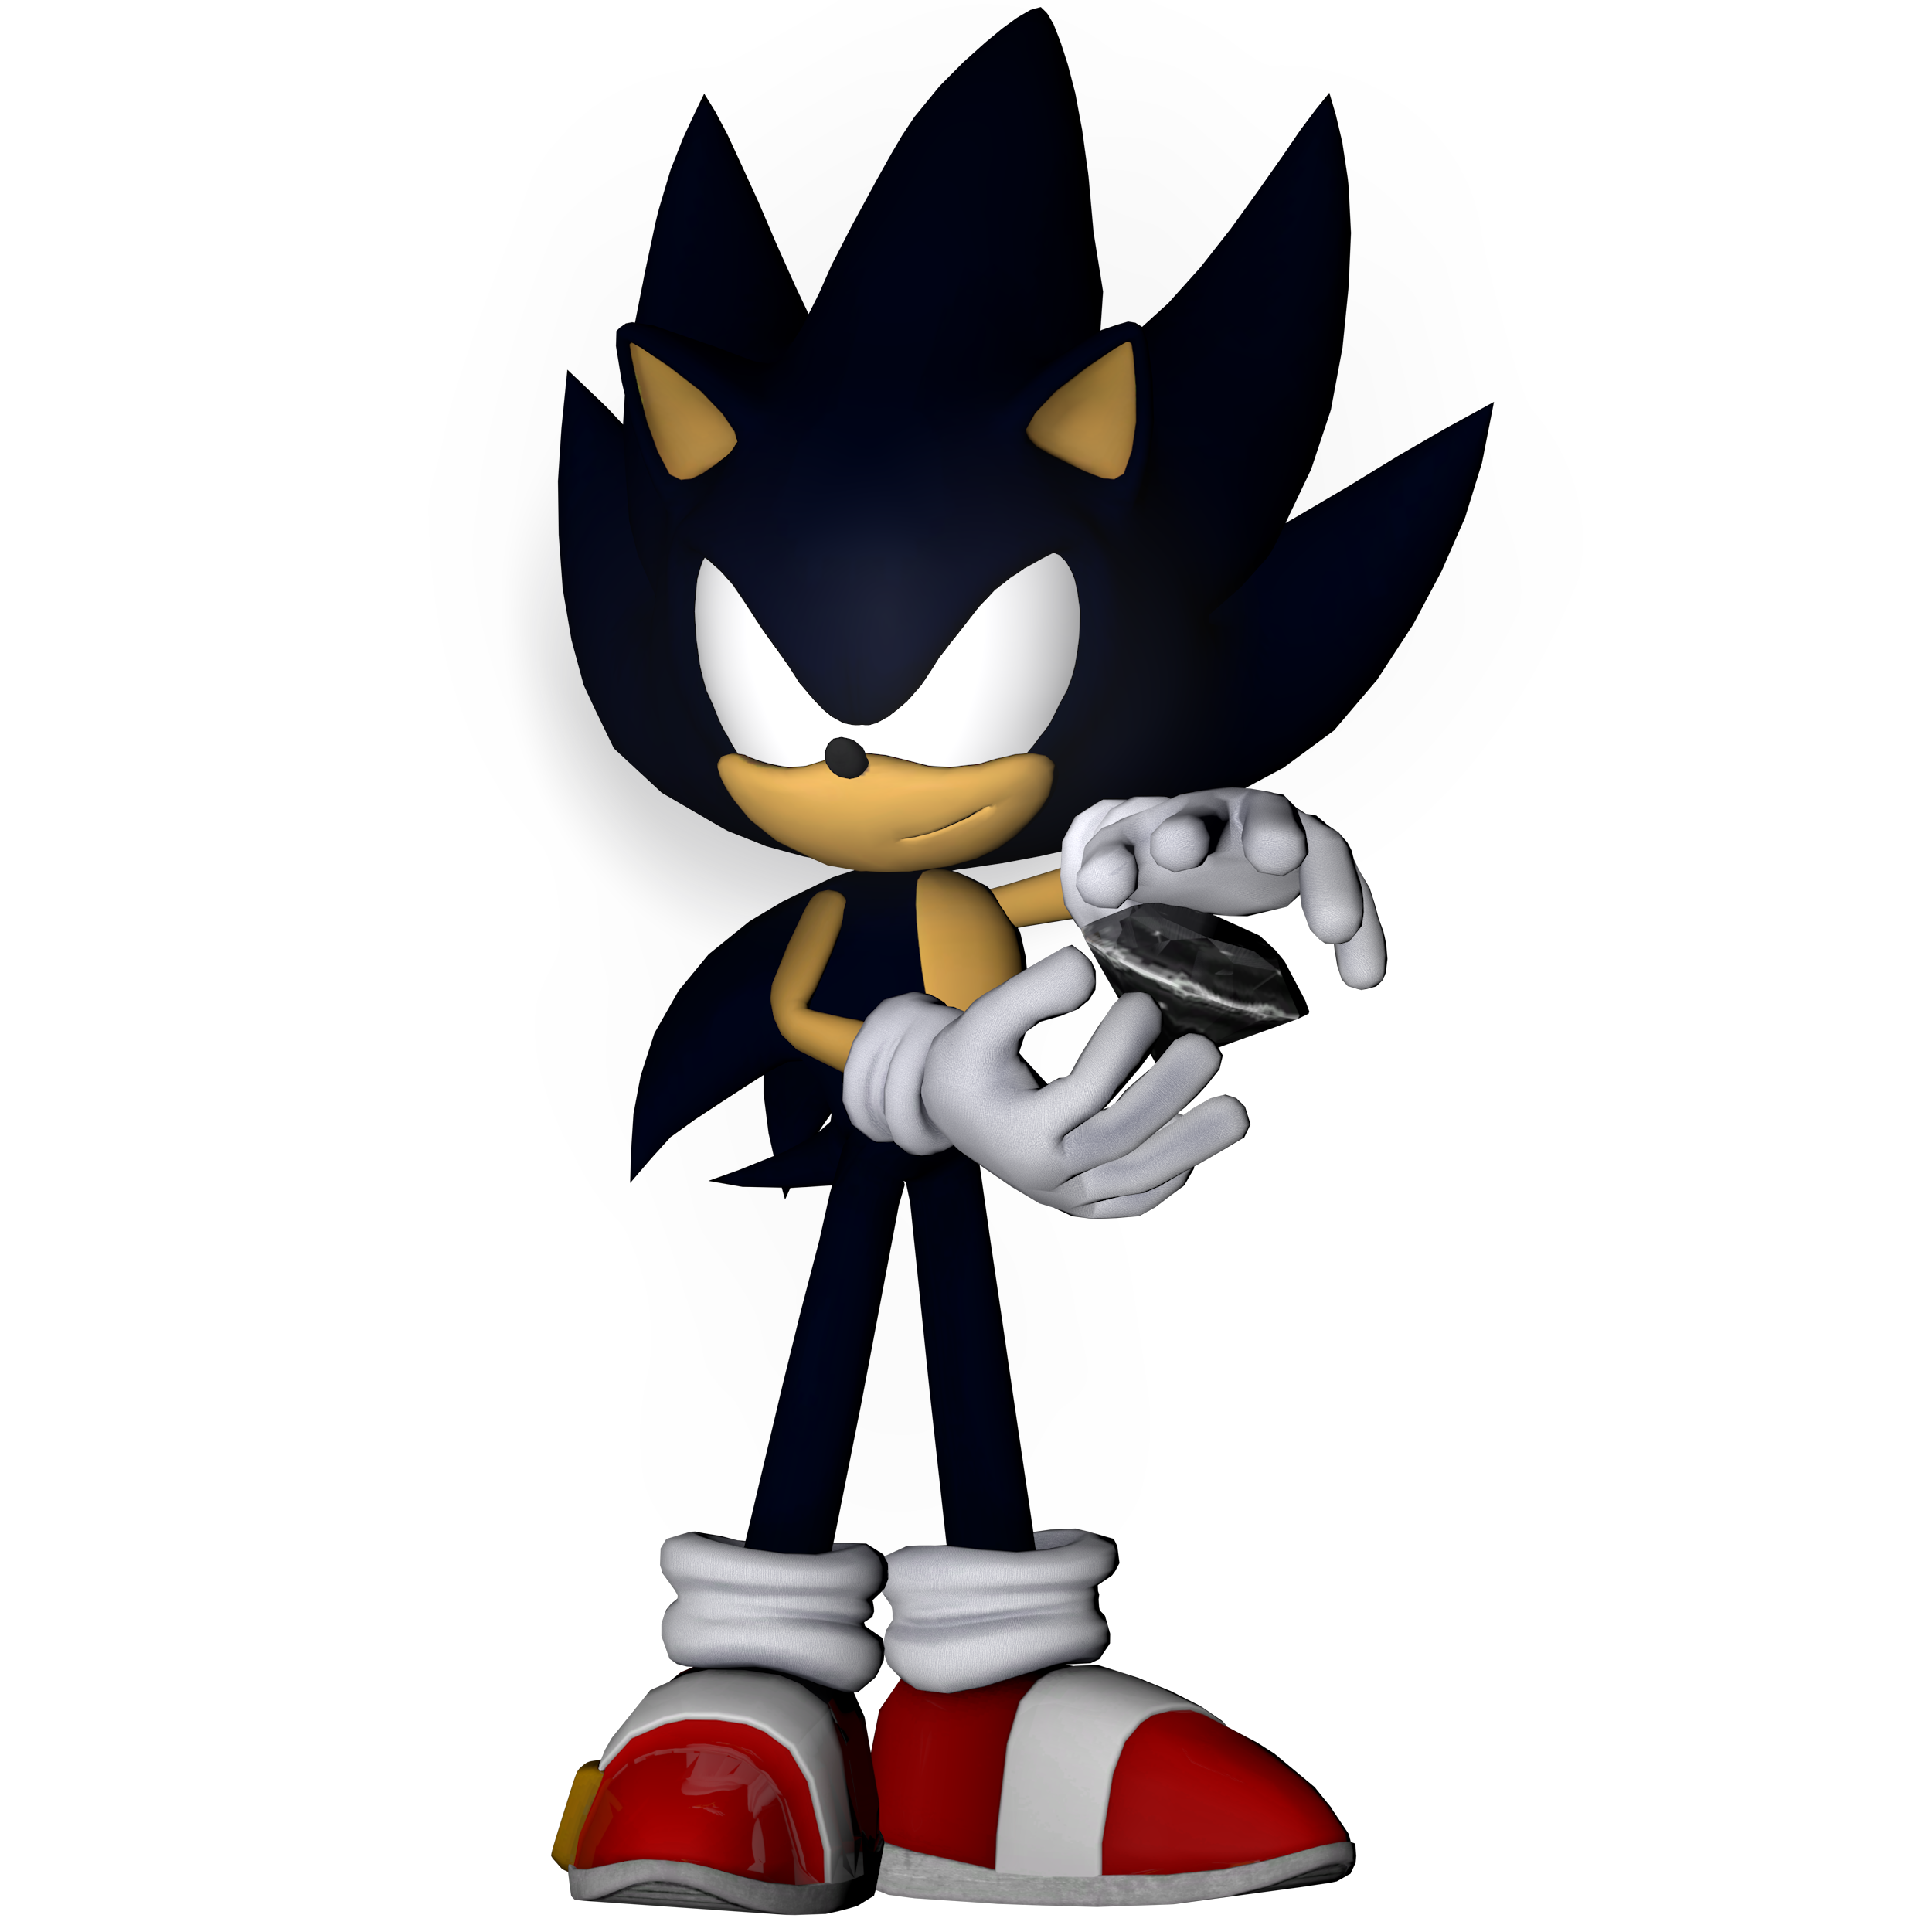 Dark Sonic, Sonic Wiki